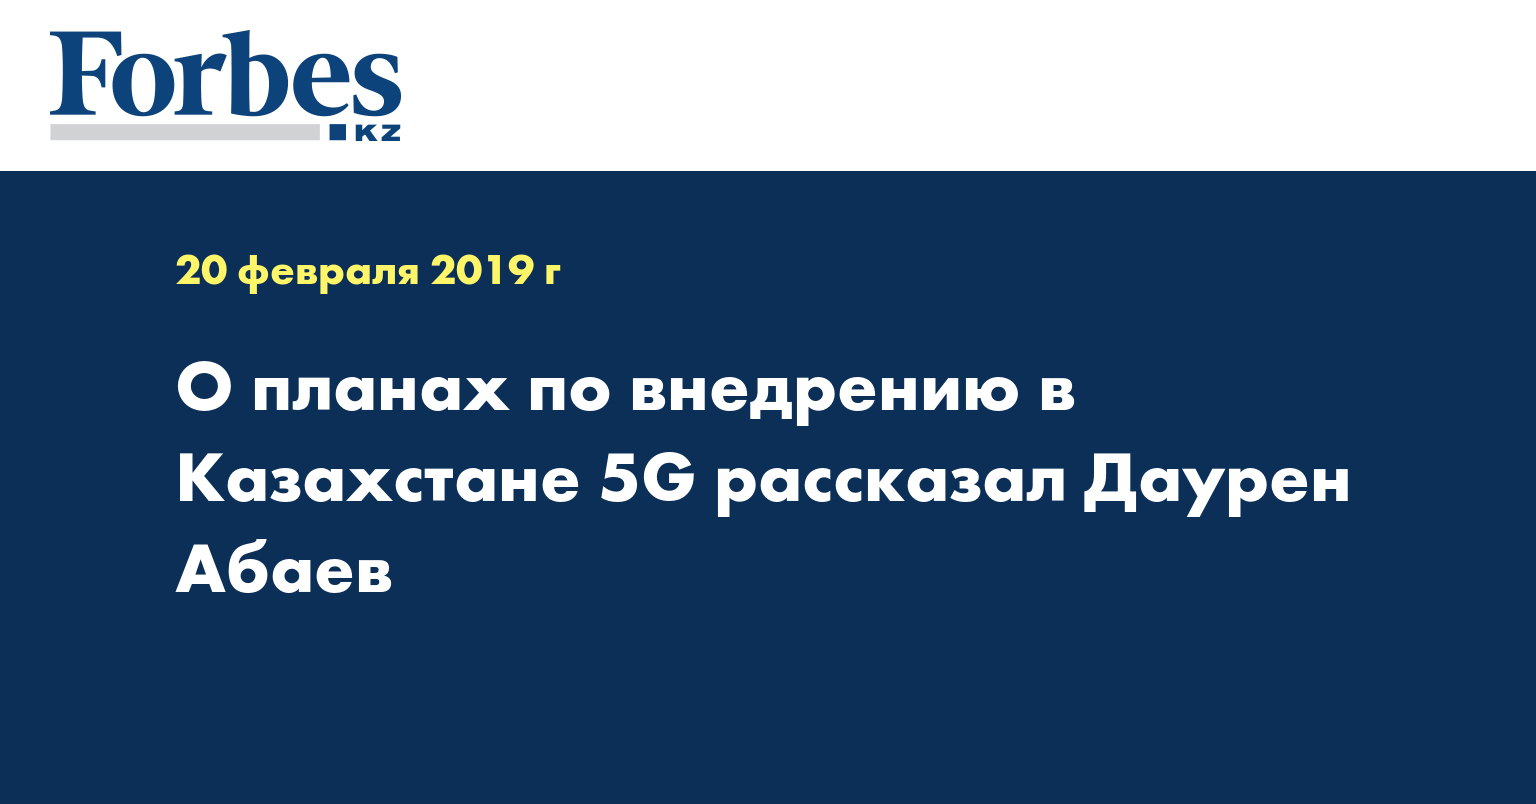 О планах по внедрению в Казахстане 5G рассказал Даурен Абаев